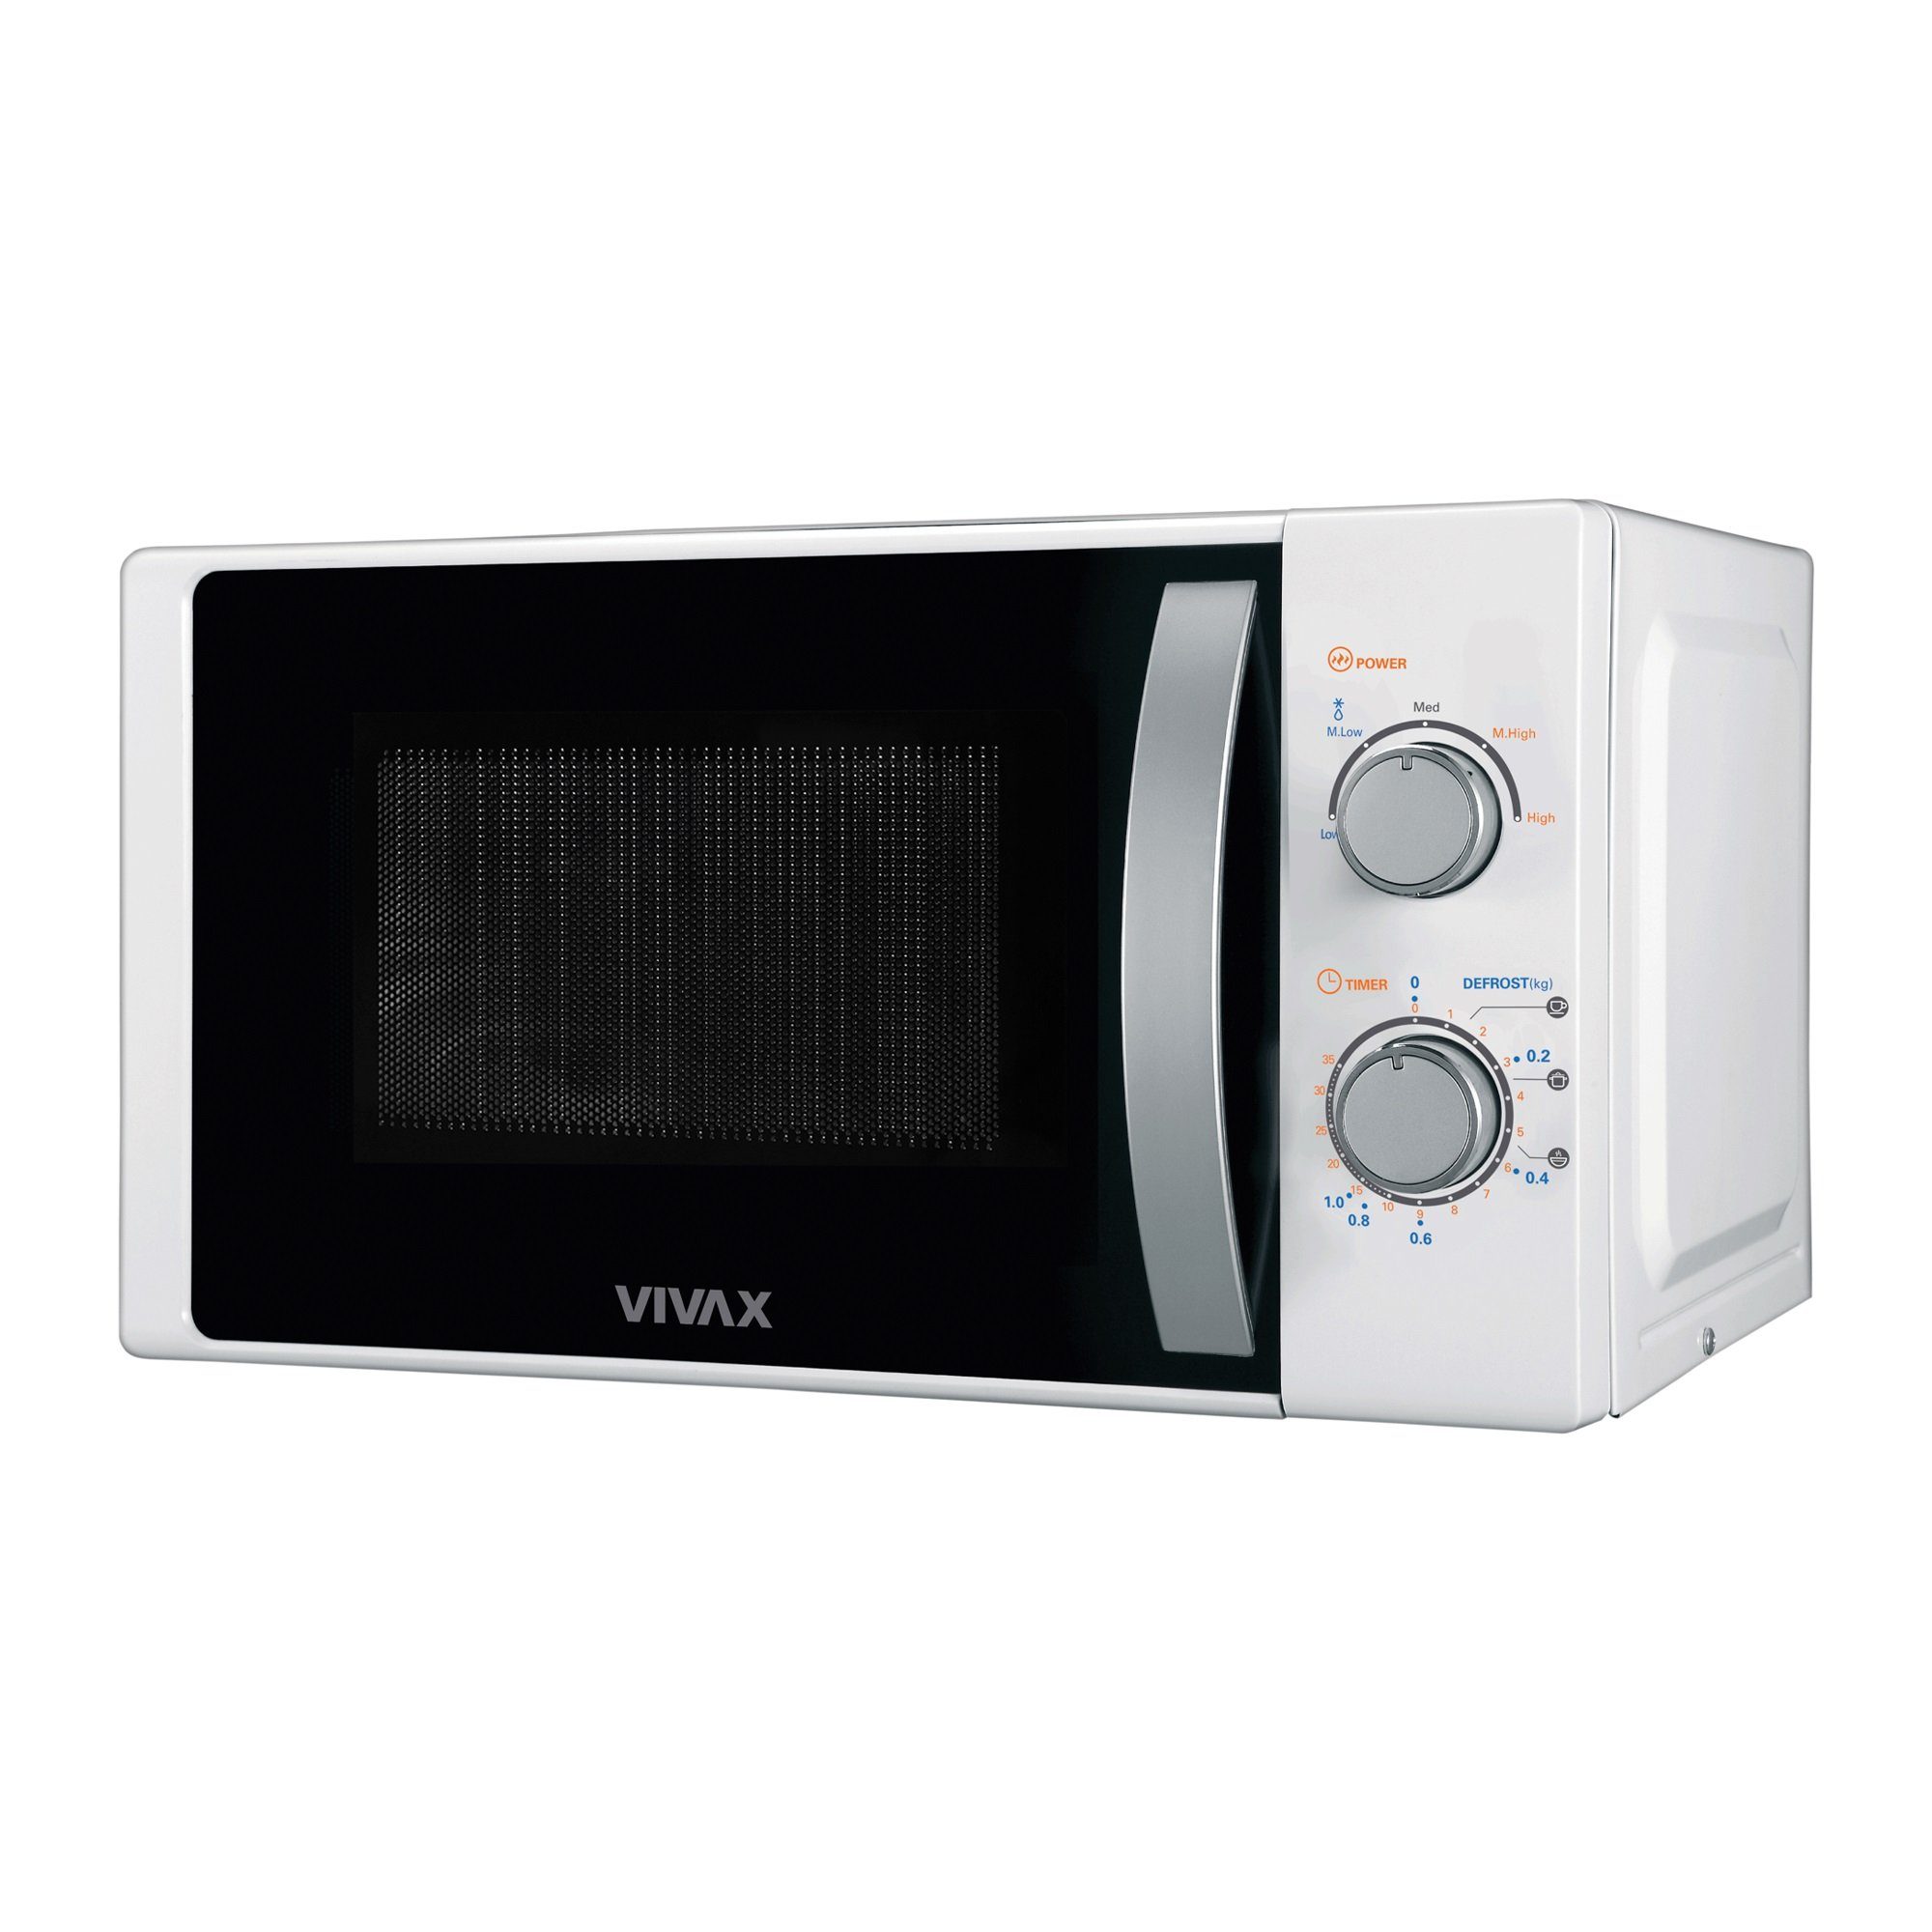 Vivax Mikrowelle 700 Watt 20l in weiß, MWO-2078, Mikrowelle, 20 l